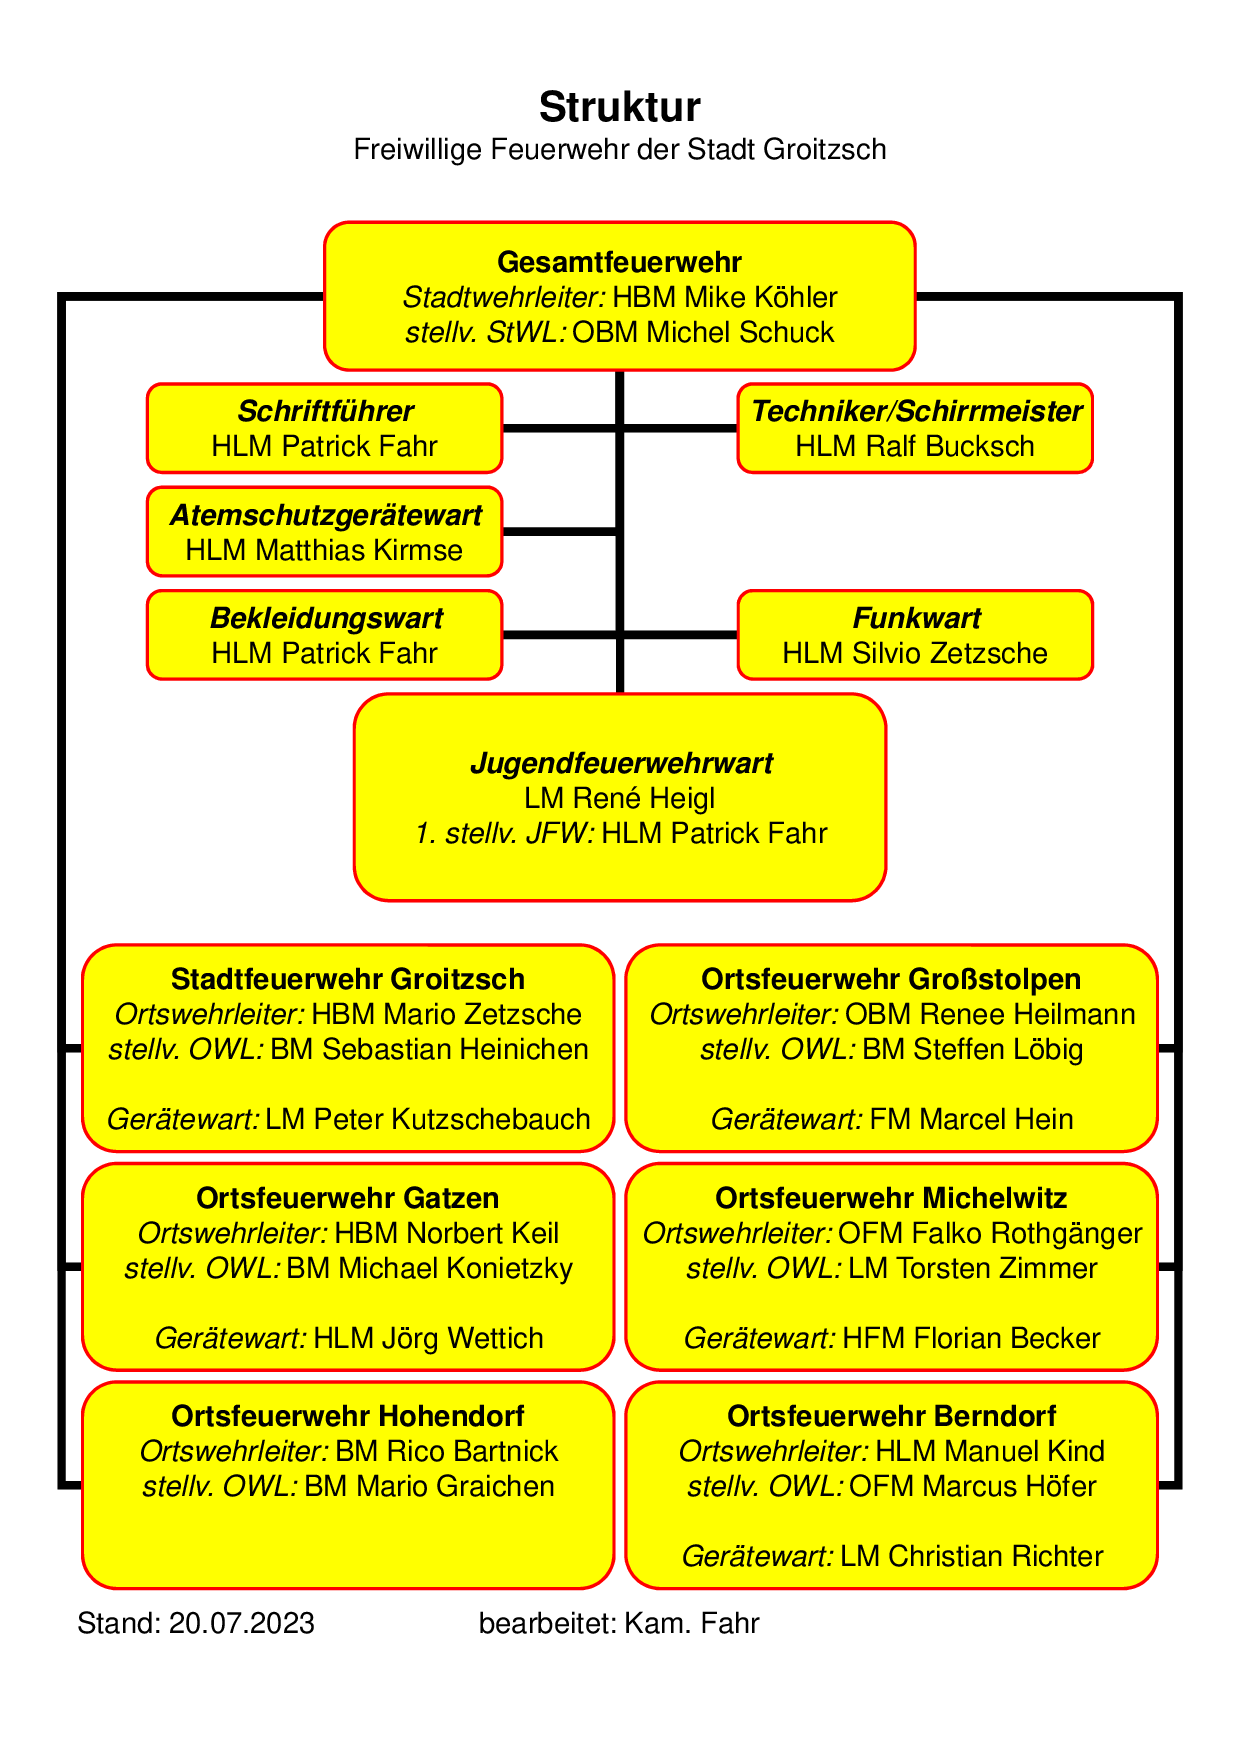 Struktur "Freiwilligen Feuerwehr der Stadt Groitzsch"